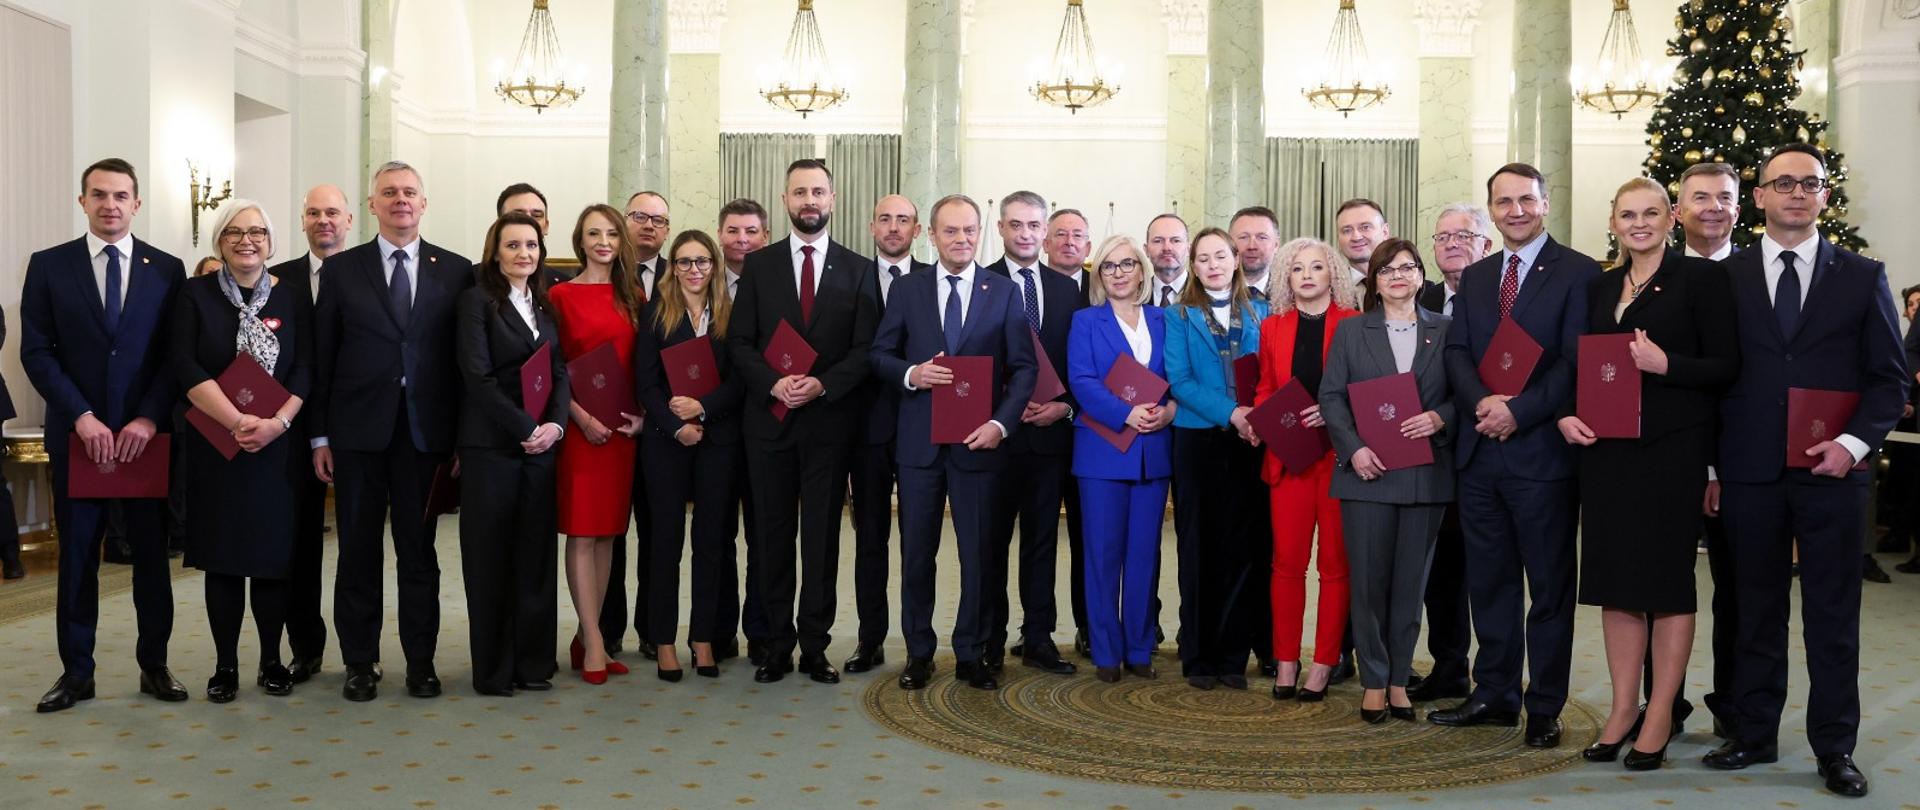 Rząd premiera Donalda Tuska zaprzysiężony - Kancelaria Prezesa Rady  Ministrów - Portal Gov.pl